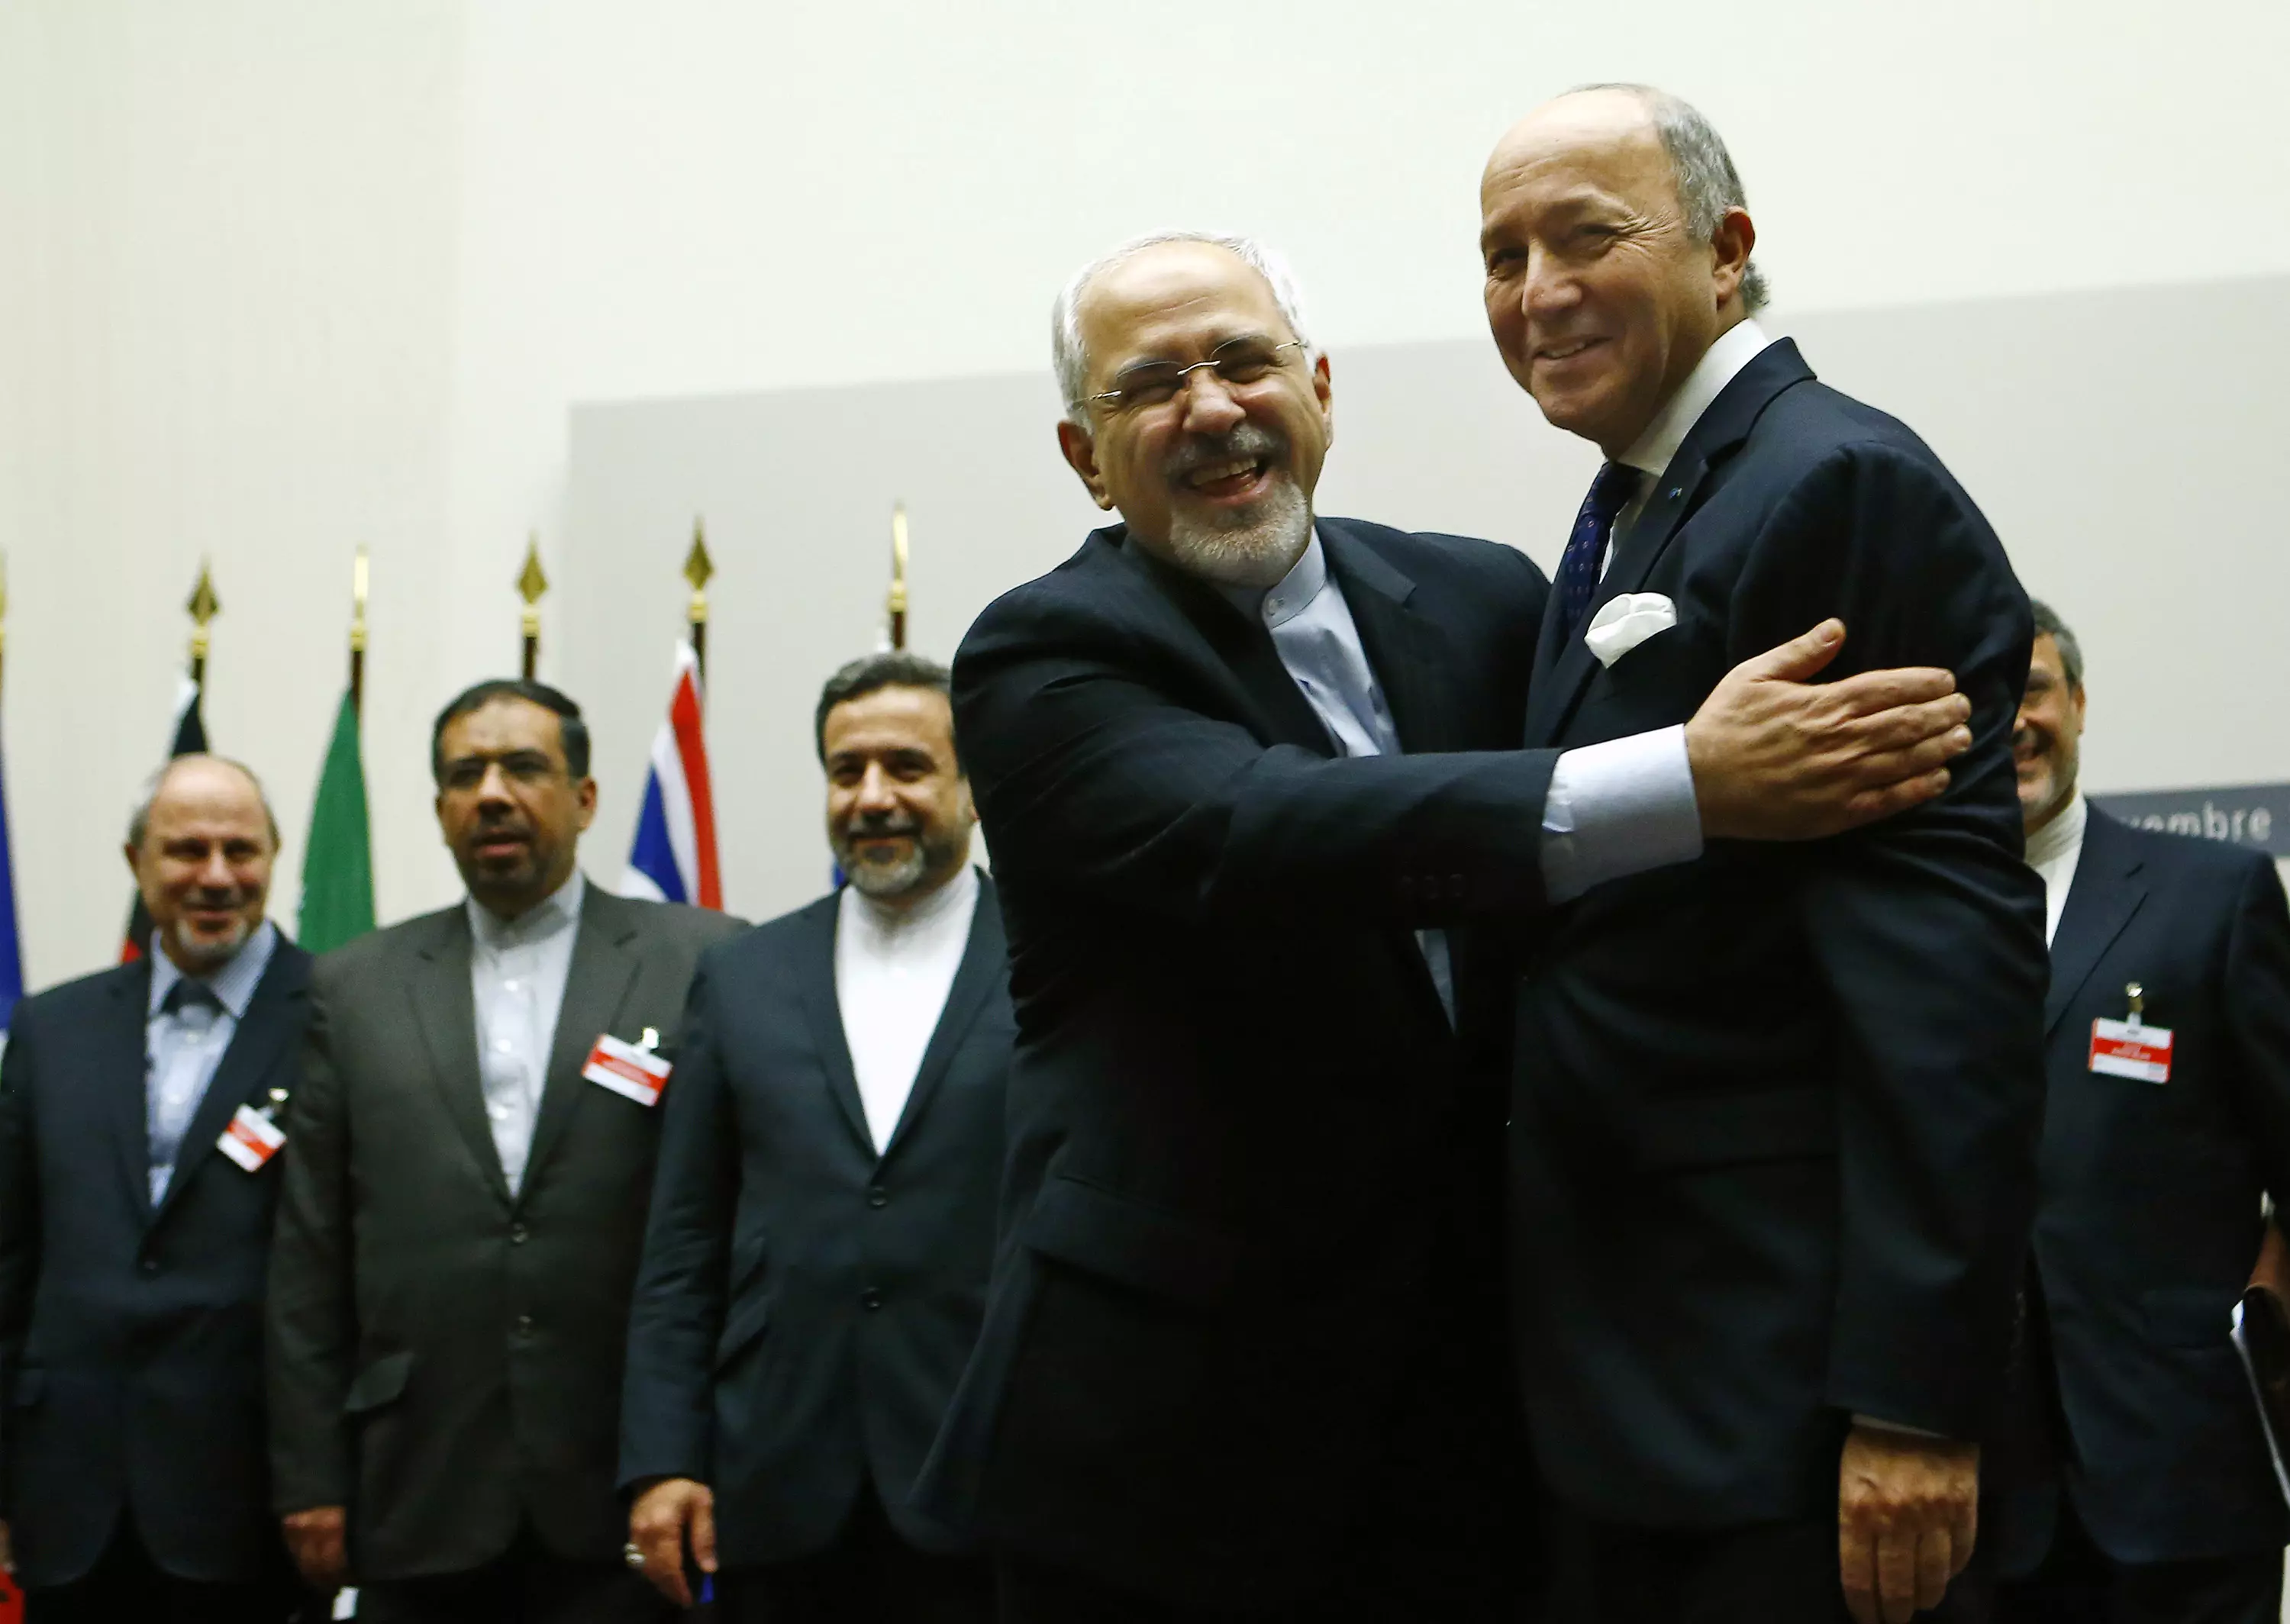 העולם ממהר לצרף את איראן למשפחת העמים. שרי החוץ של צרפת ואיראן בז'נבה